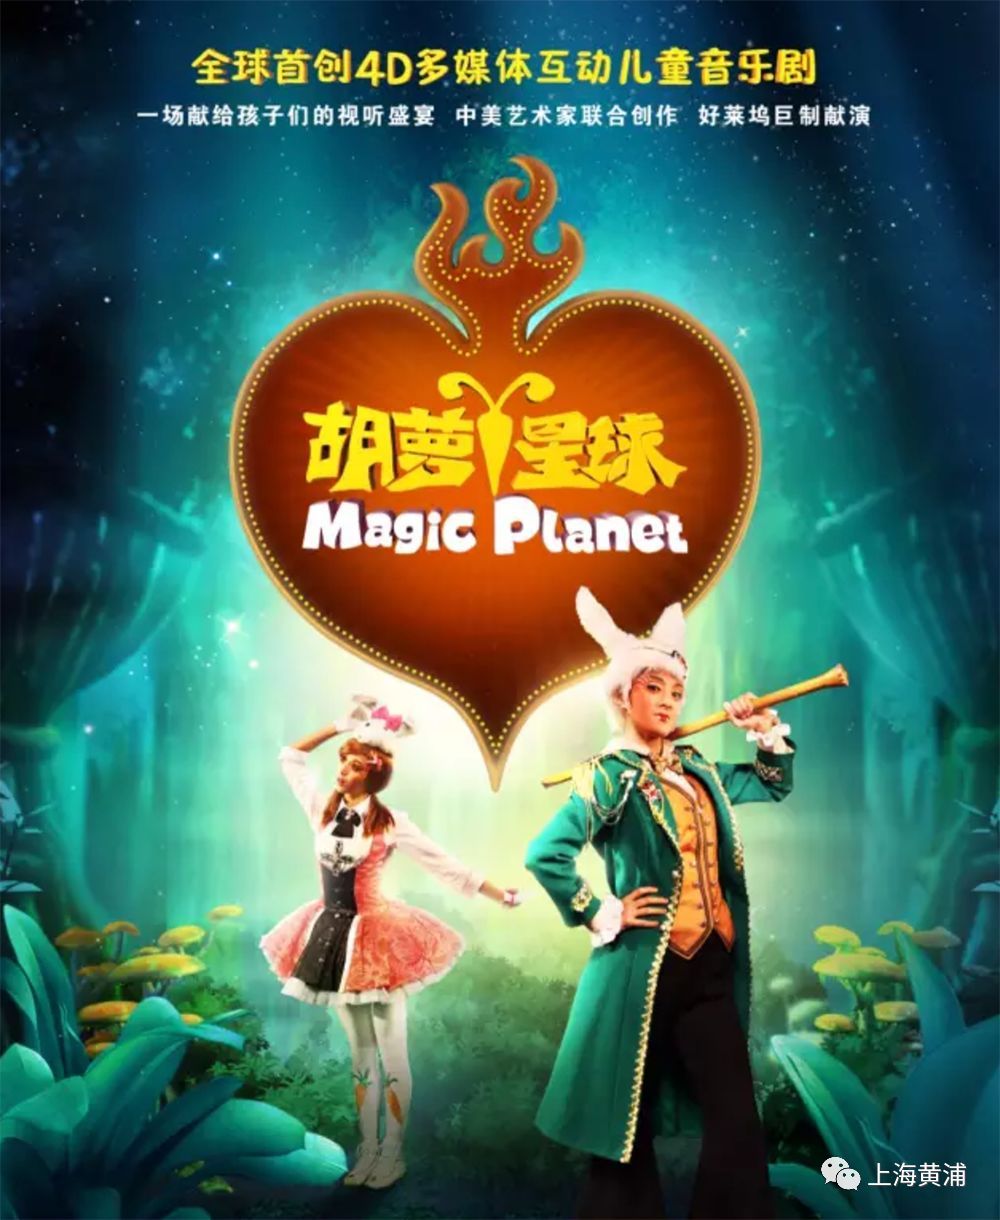 带着孩子到长江剧场看儿童音乐剧《胡萝卜星球》!